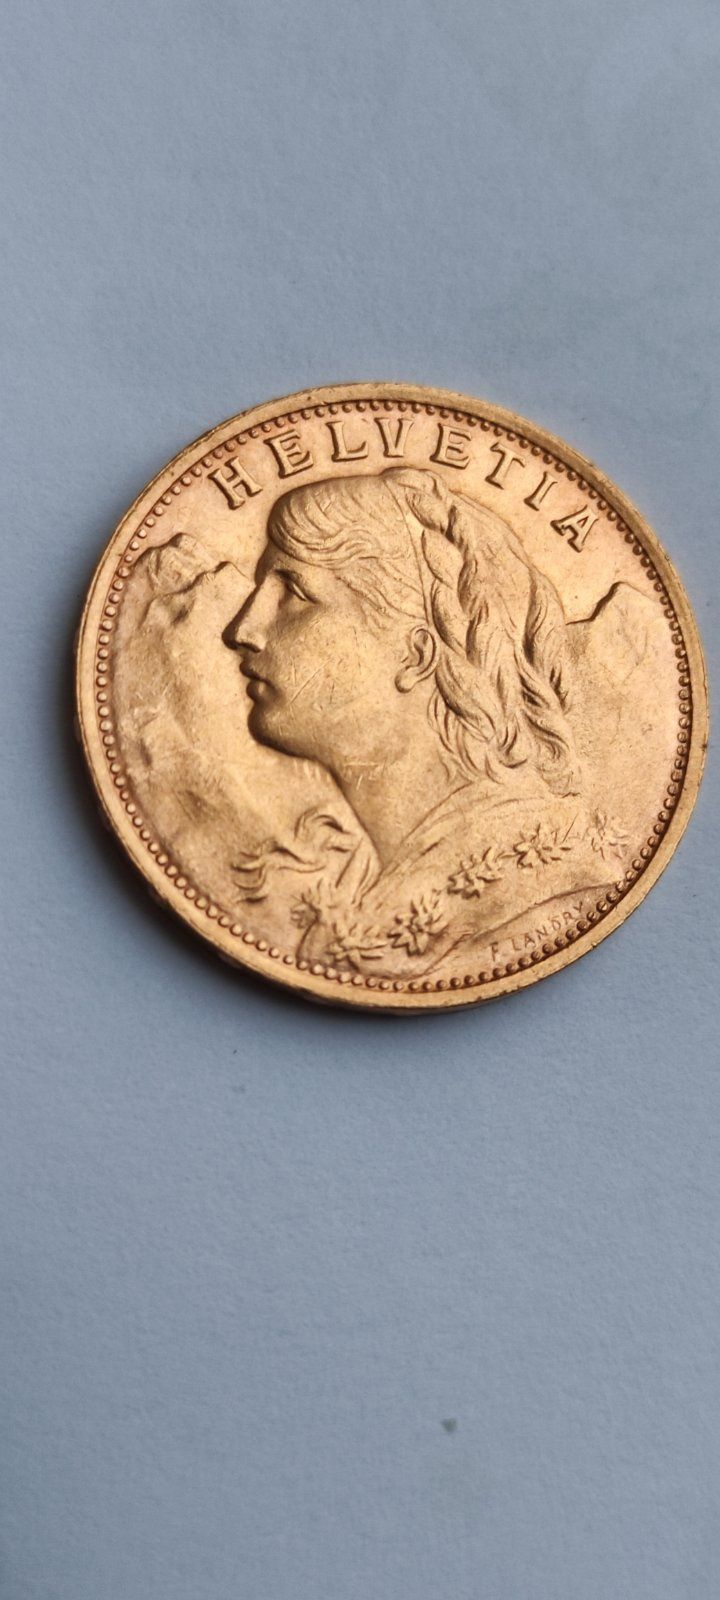 1935 год золотая монета 20 франков Швейцария Гельвеция 900 проба,6,45г